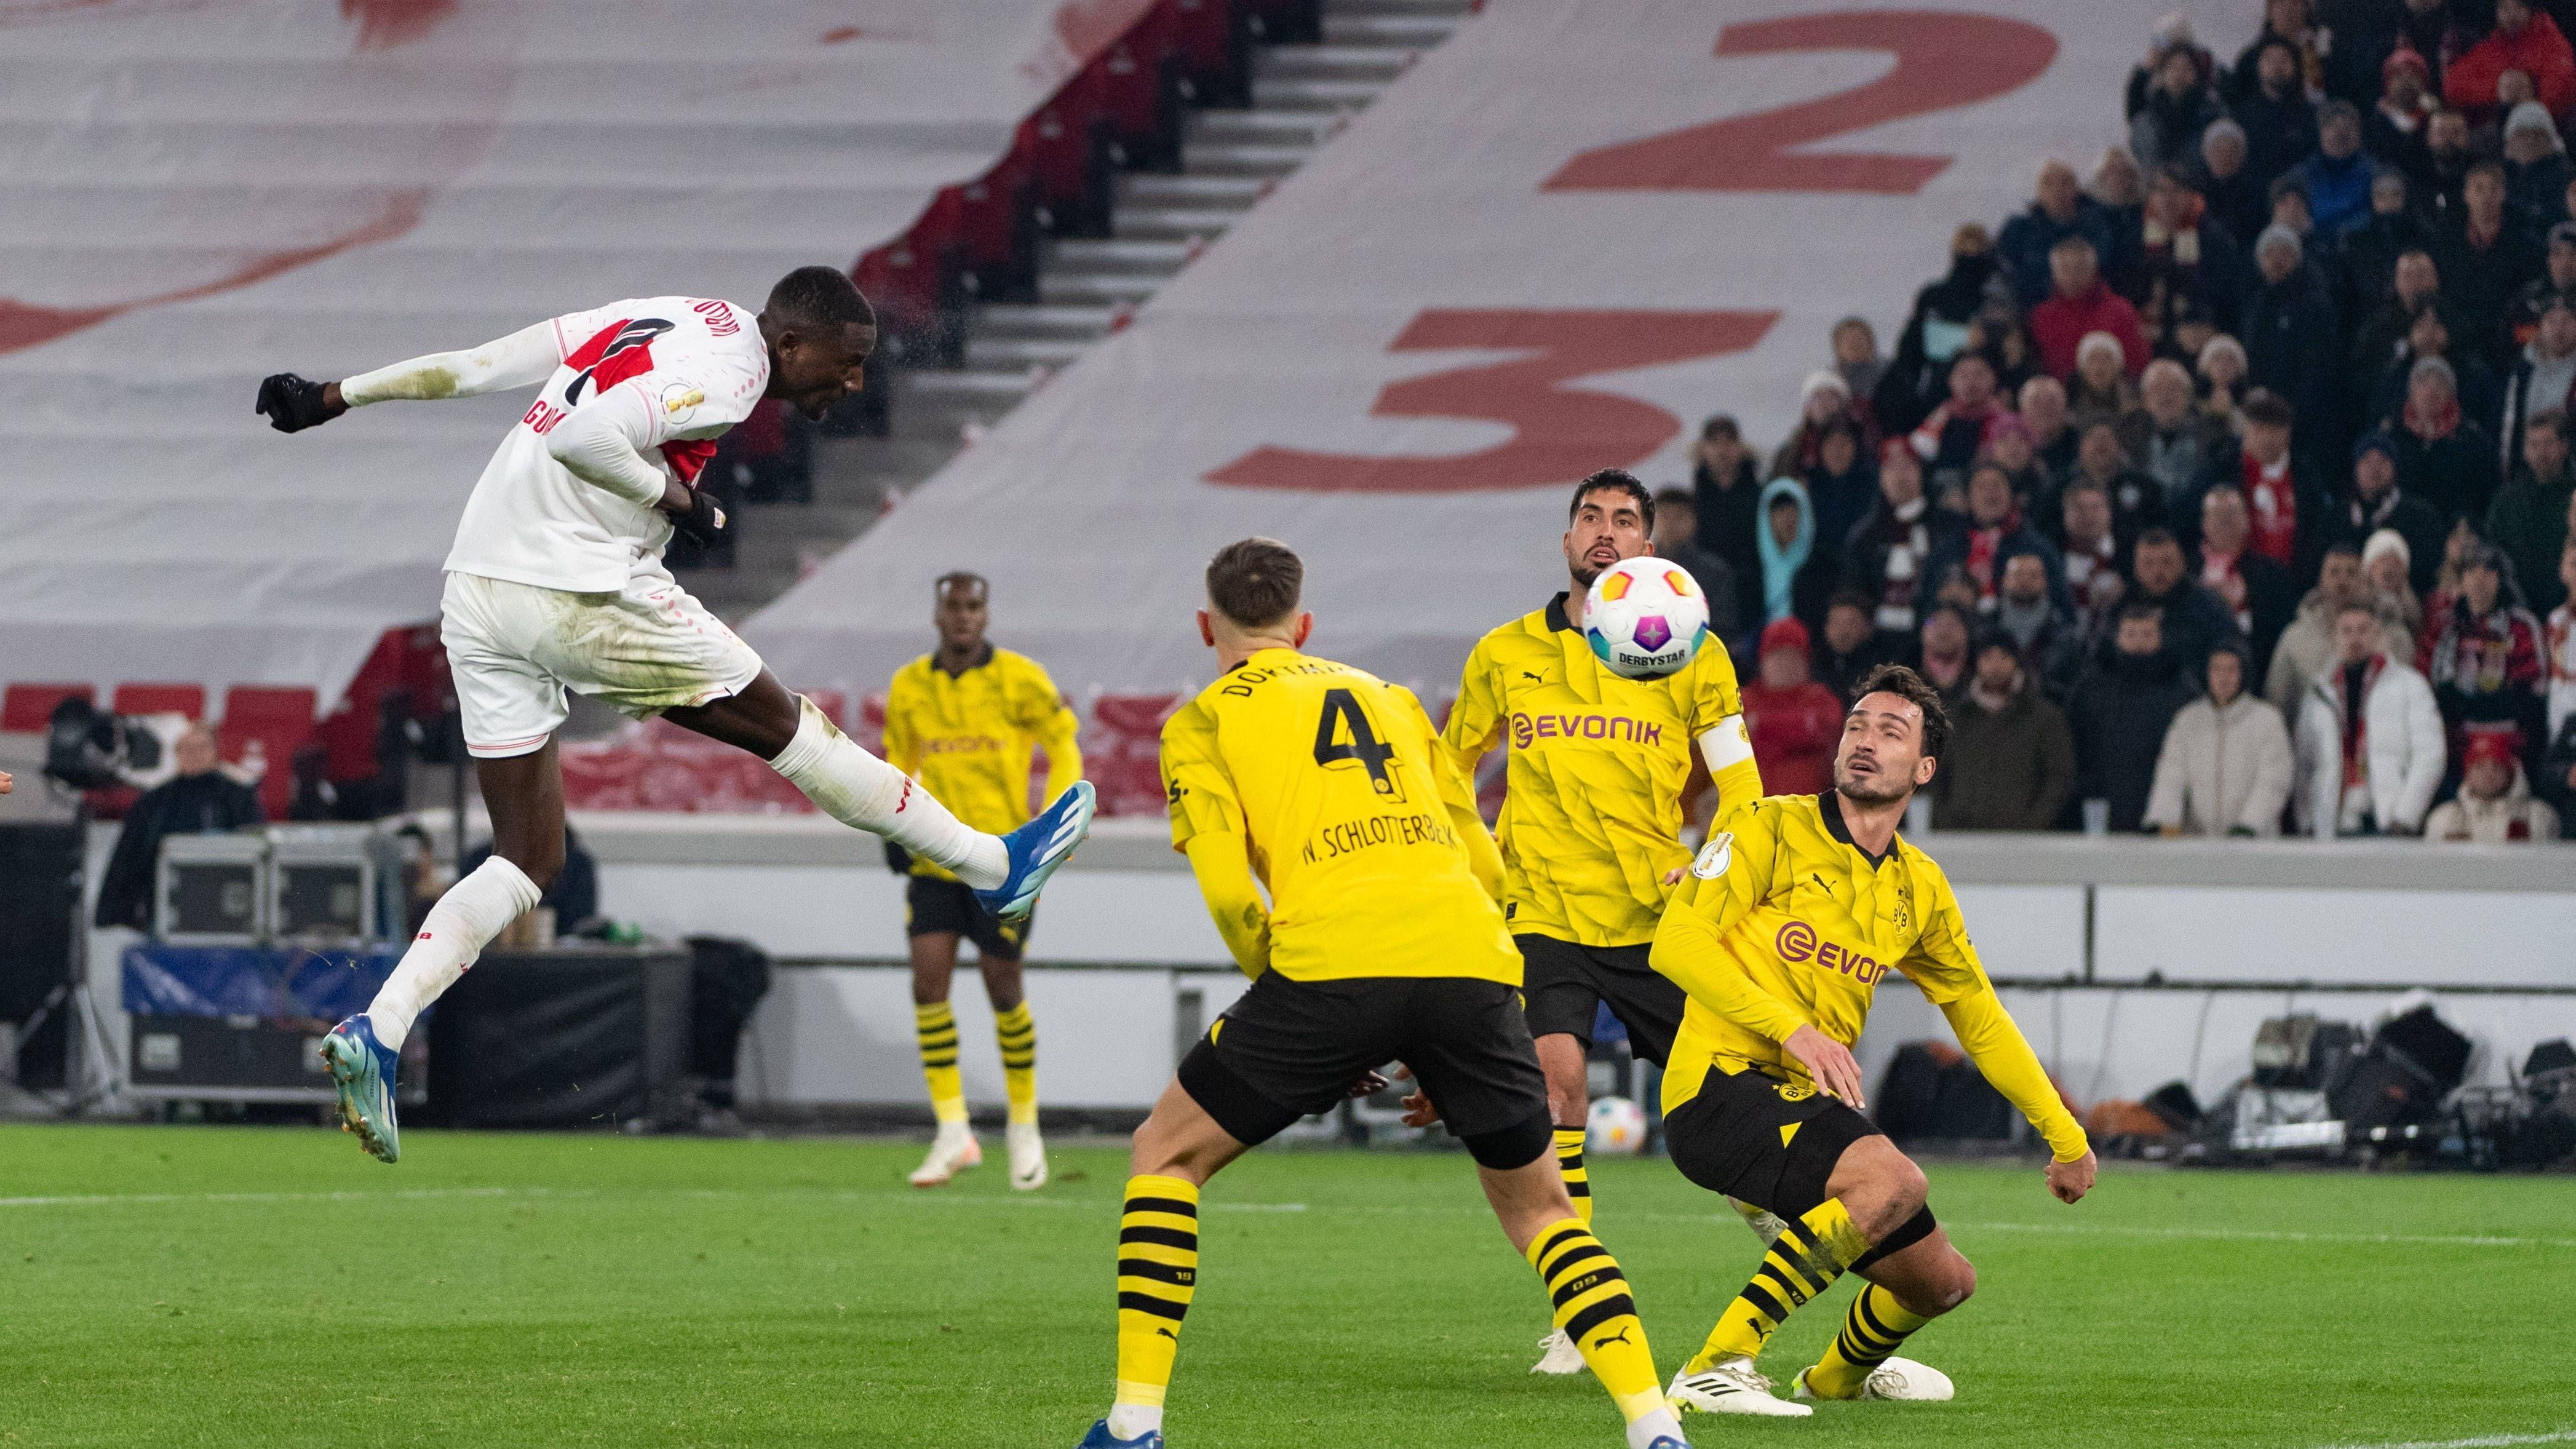 Der VfB Stuttgart überflügelt Borussia Dortmund zum zweiten Mal binnen weniger Wochen und steht nach einem 2:0-Sieg gegen den BVB im Pokal-Viertelfinale. Die VfB-Offensive glänzt und hätte sogar noch mehr Tore erzielen können. Der BVB zeigt sich seltsam passiv. Die Spieler beider Teams in der Einzelkritik.